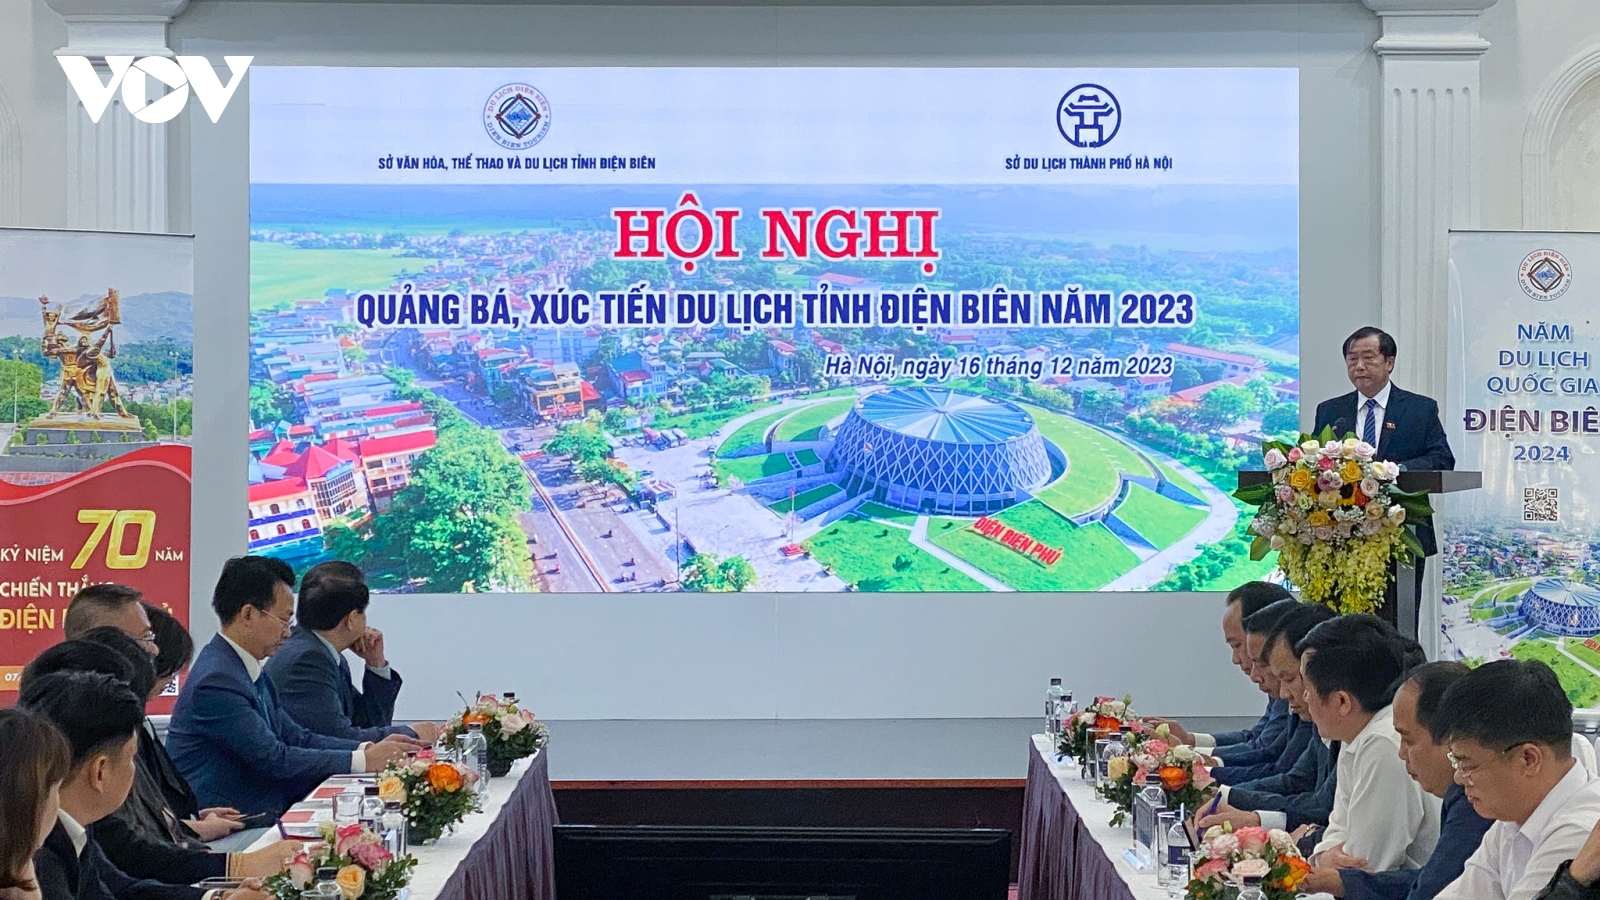 Điện Biên đặt nhiều kỳ vọng vào Năm Du lịch quốc gia 2024